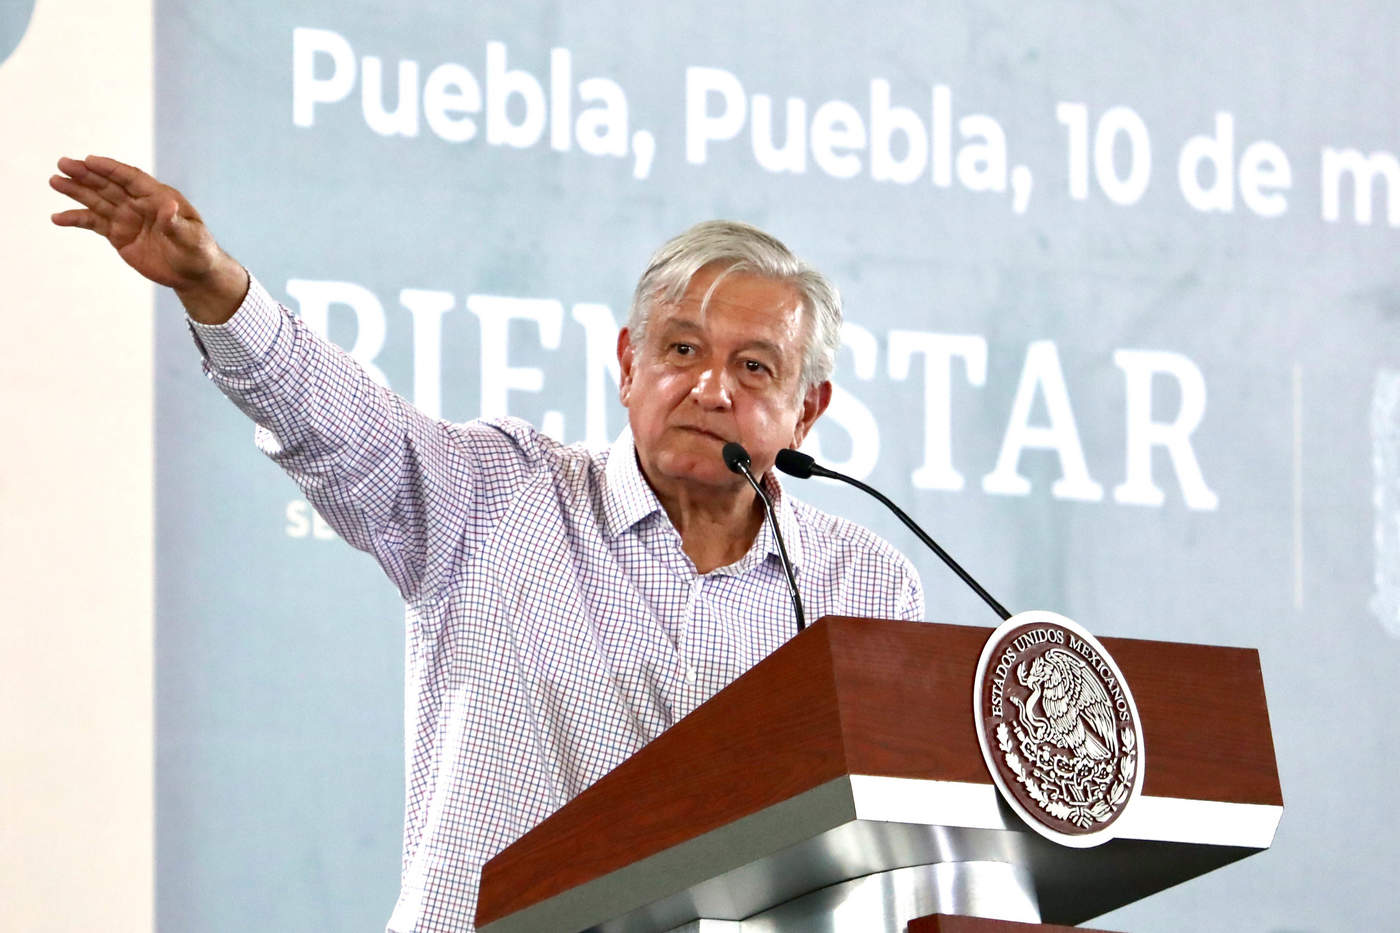 El presidente llamó a que durante los comicios de Puebla, programados para el 2 de junio, no se recurra a la compra de votos ni se trafique con la pobreza de los electores ni que tampoco se falsifiquen los resultados.